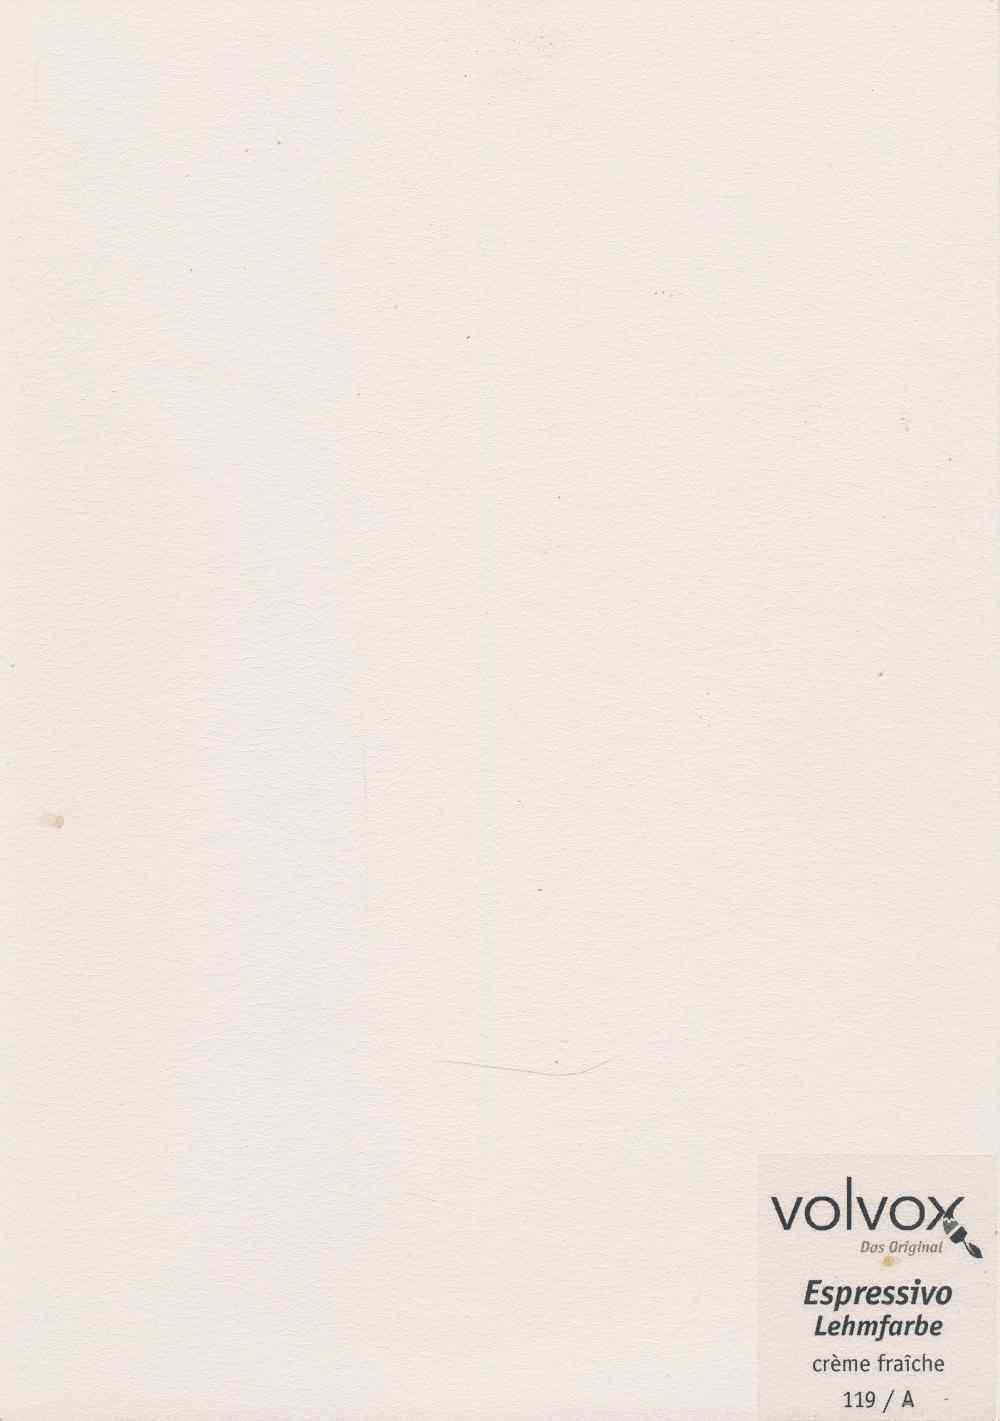 Volvox Espressivo Lehmfarbe 119 creme fraiche 